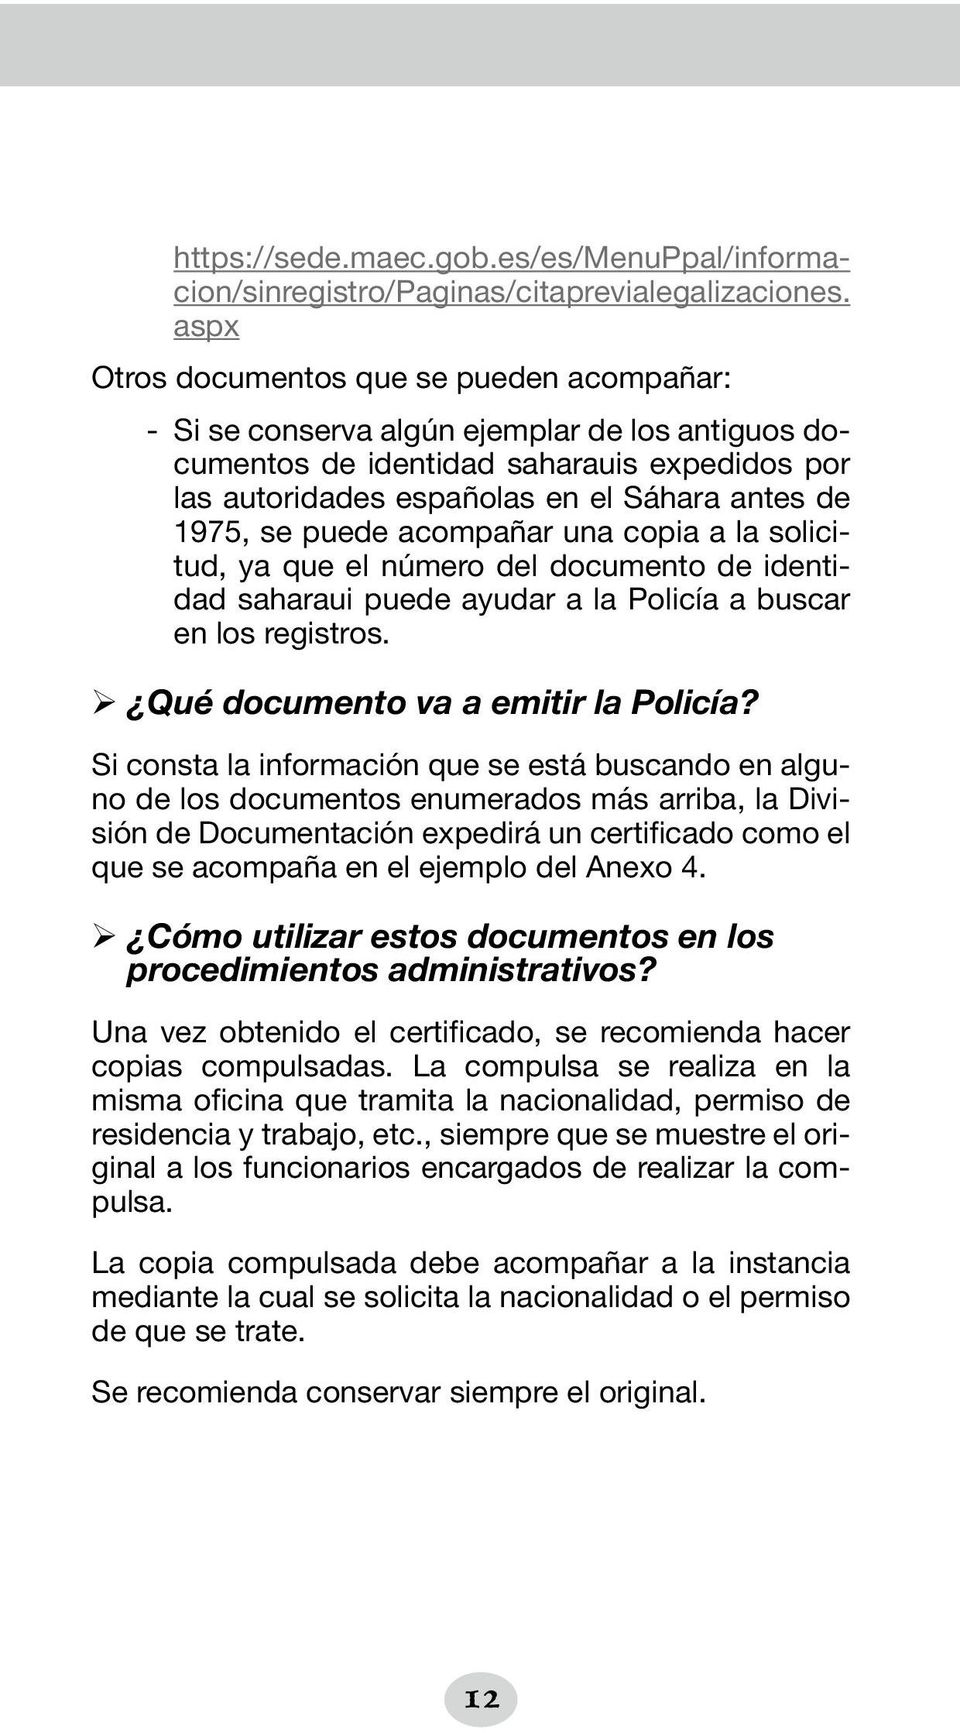 se puede acompañar una copia a la solicitud, ya que el número del documento de identidad saharaui puede ayudar a la Policía a buscar en los registros. ¾ Qué documento va a emitir la Policía?